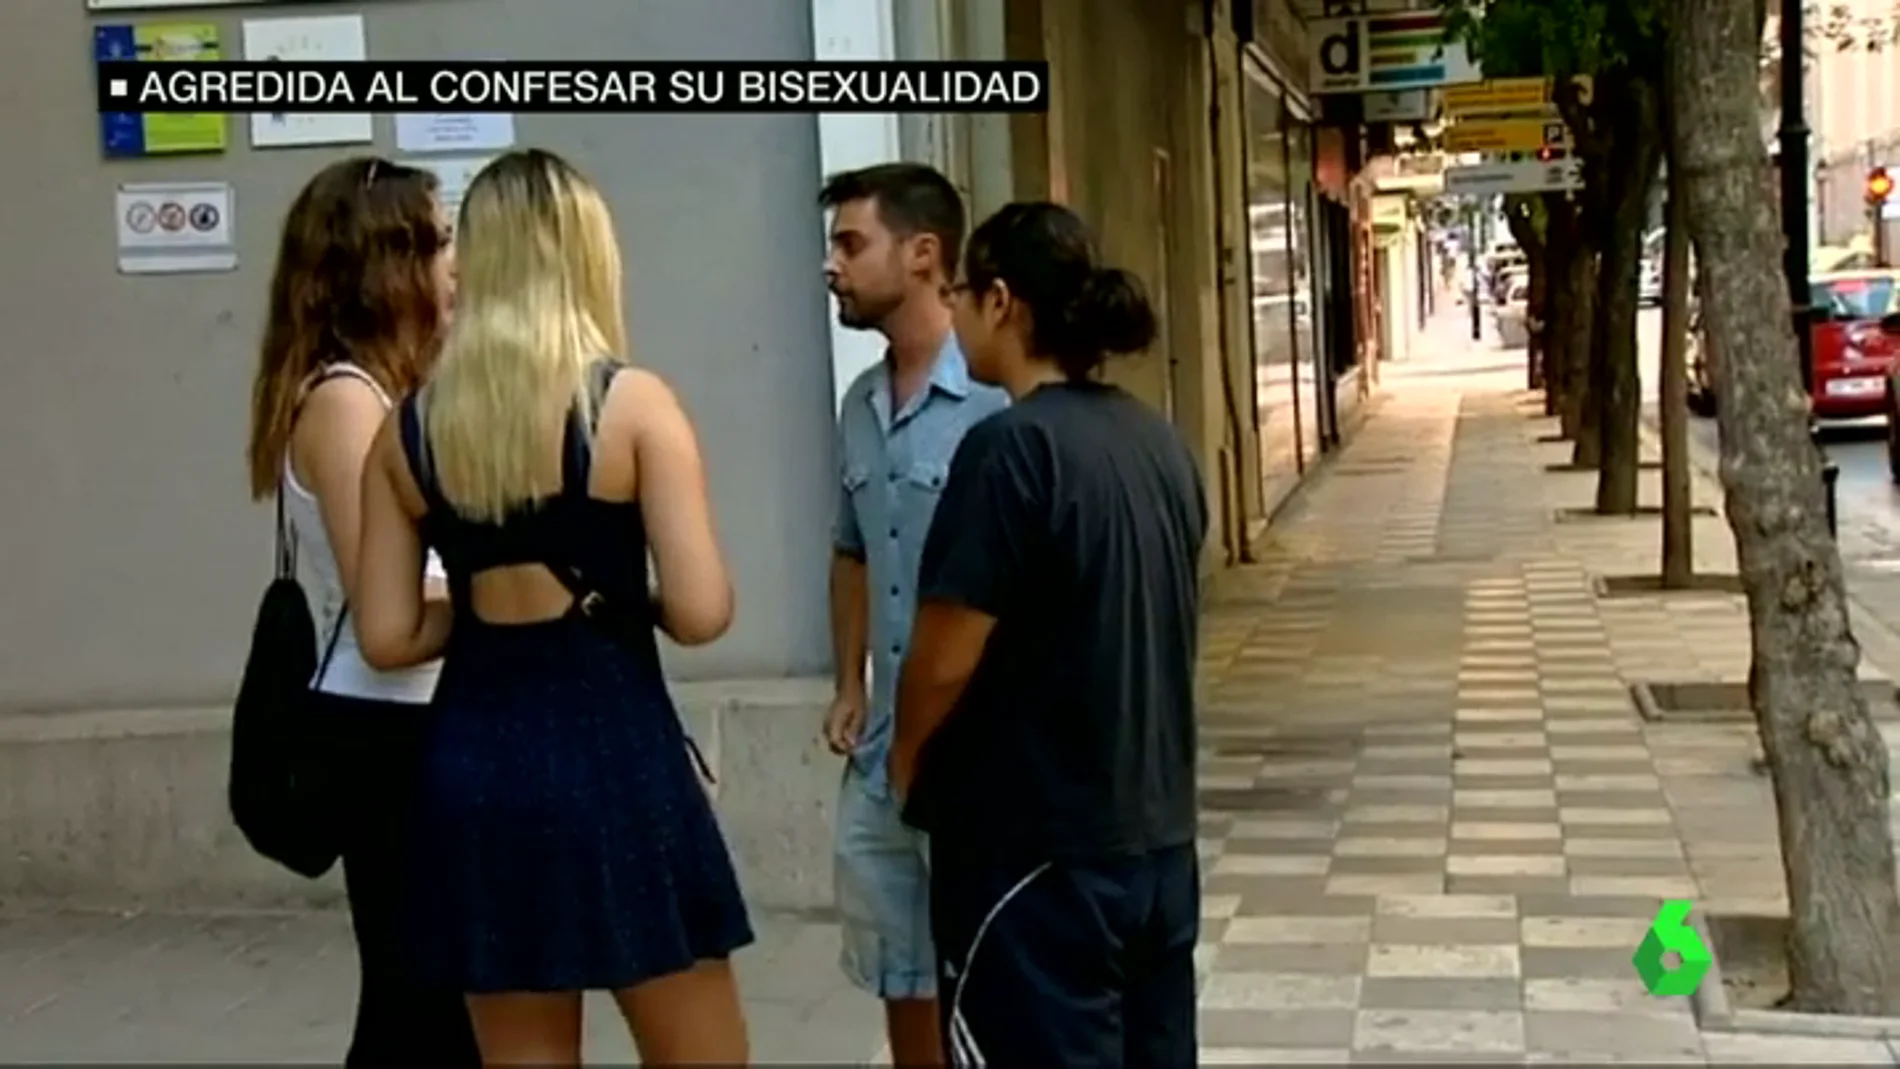 Frame 15.677962 de: Madison, víctima de una agresión homófoba en Albacete: "Me escupió en la boca y me cogió del cuello"